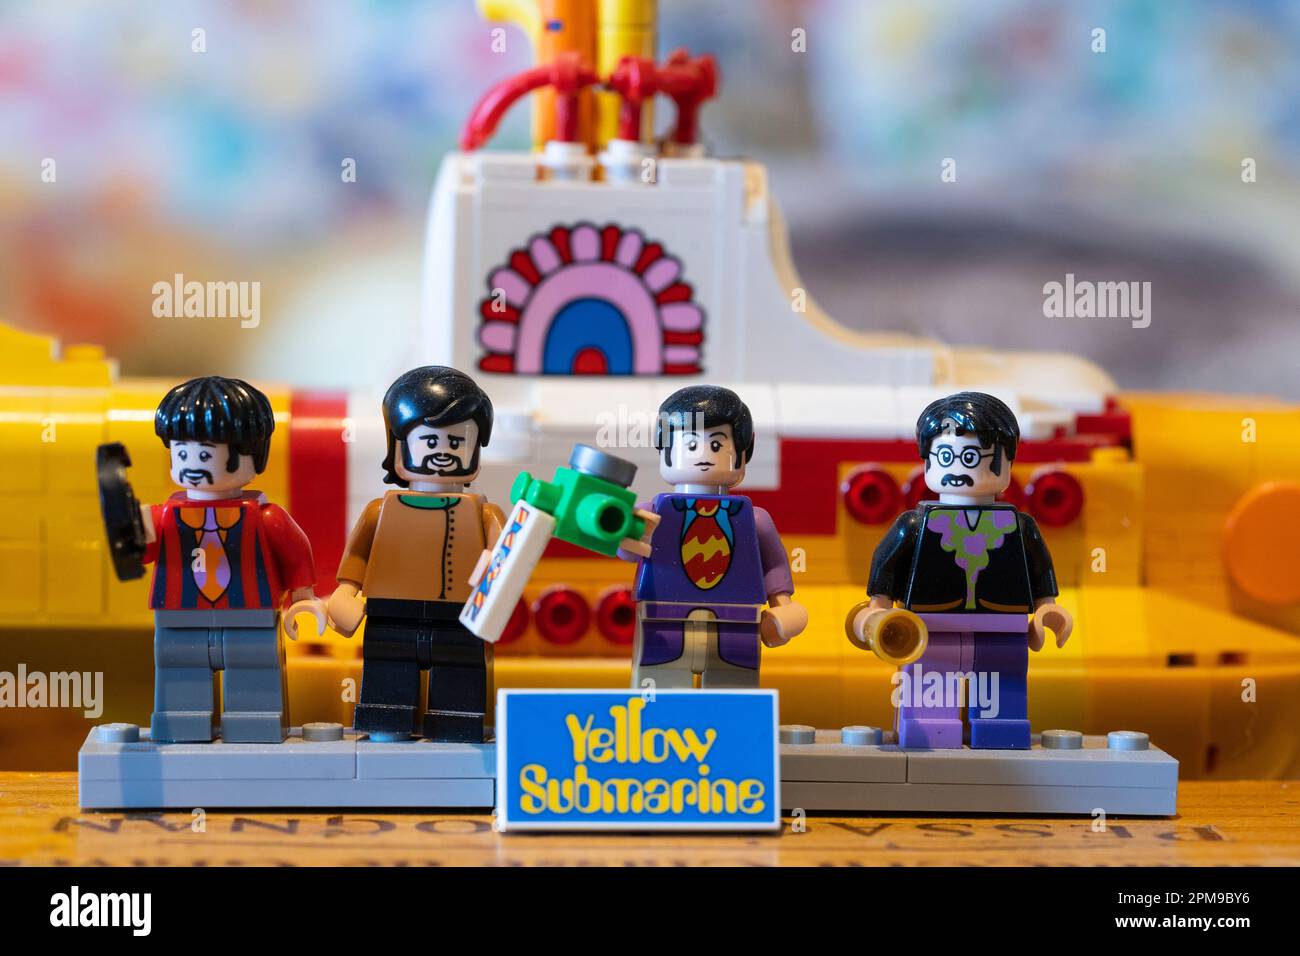 La versione Lego dell'iconico sottomarino giallo del famoso film del 1968 con i Fab Four della band britannica The Beatles Foto Stock